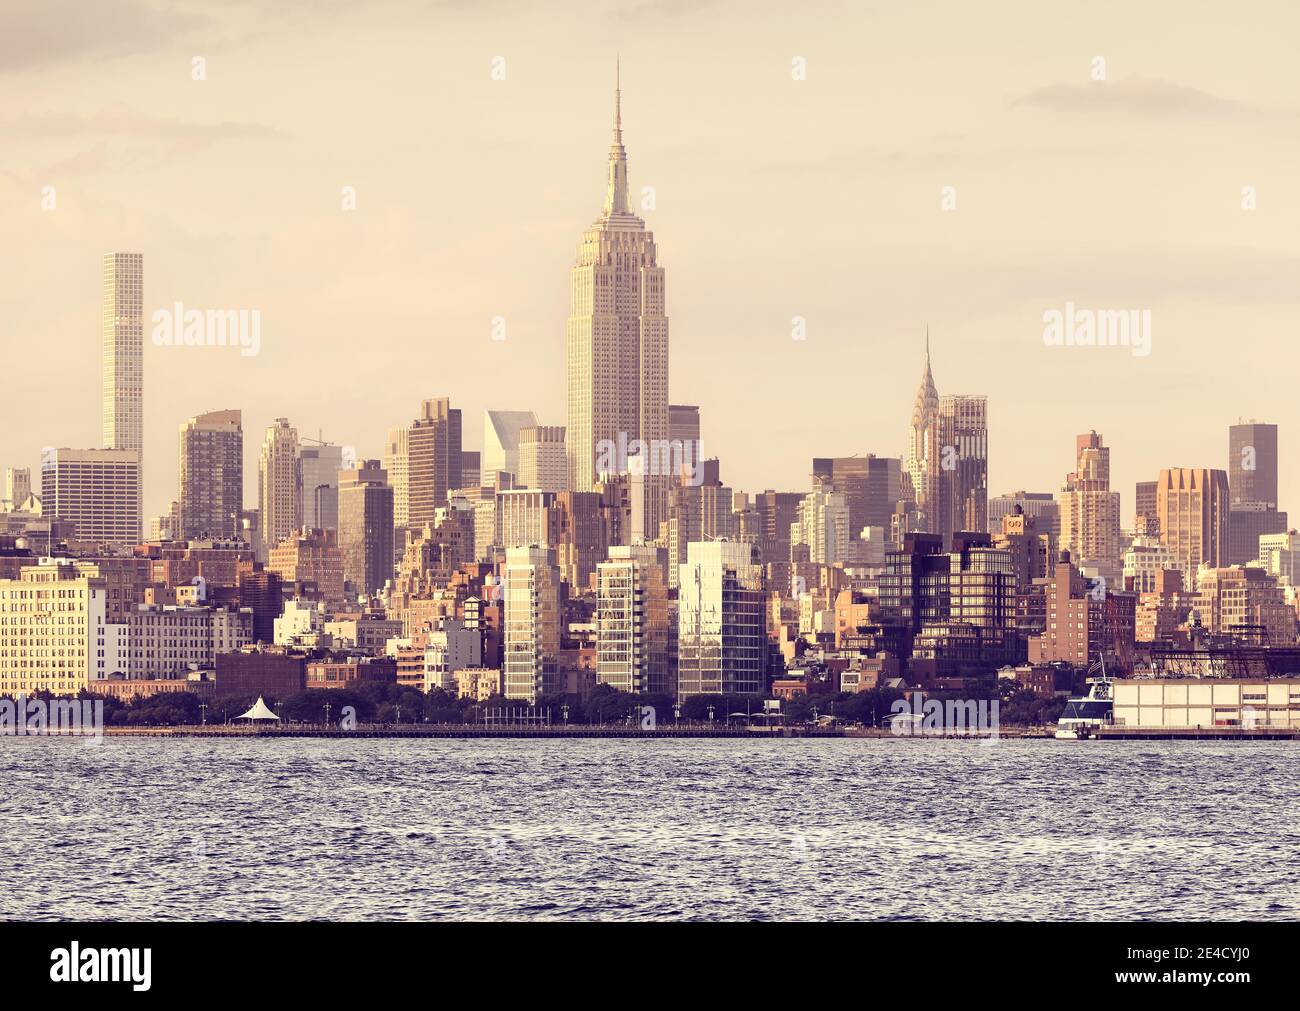 Skyline von New York City bei goldenem Sonnenuntergang, farbiges Bild, USA. Stockfoto